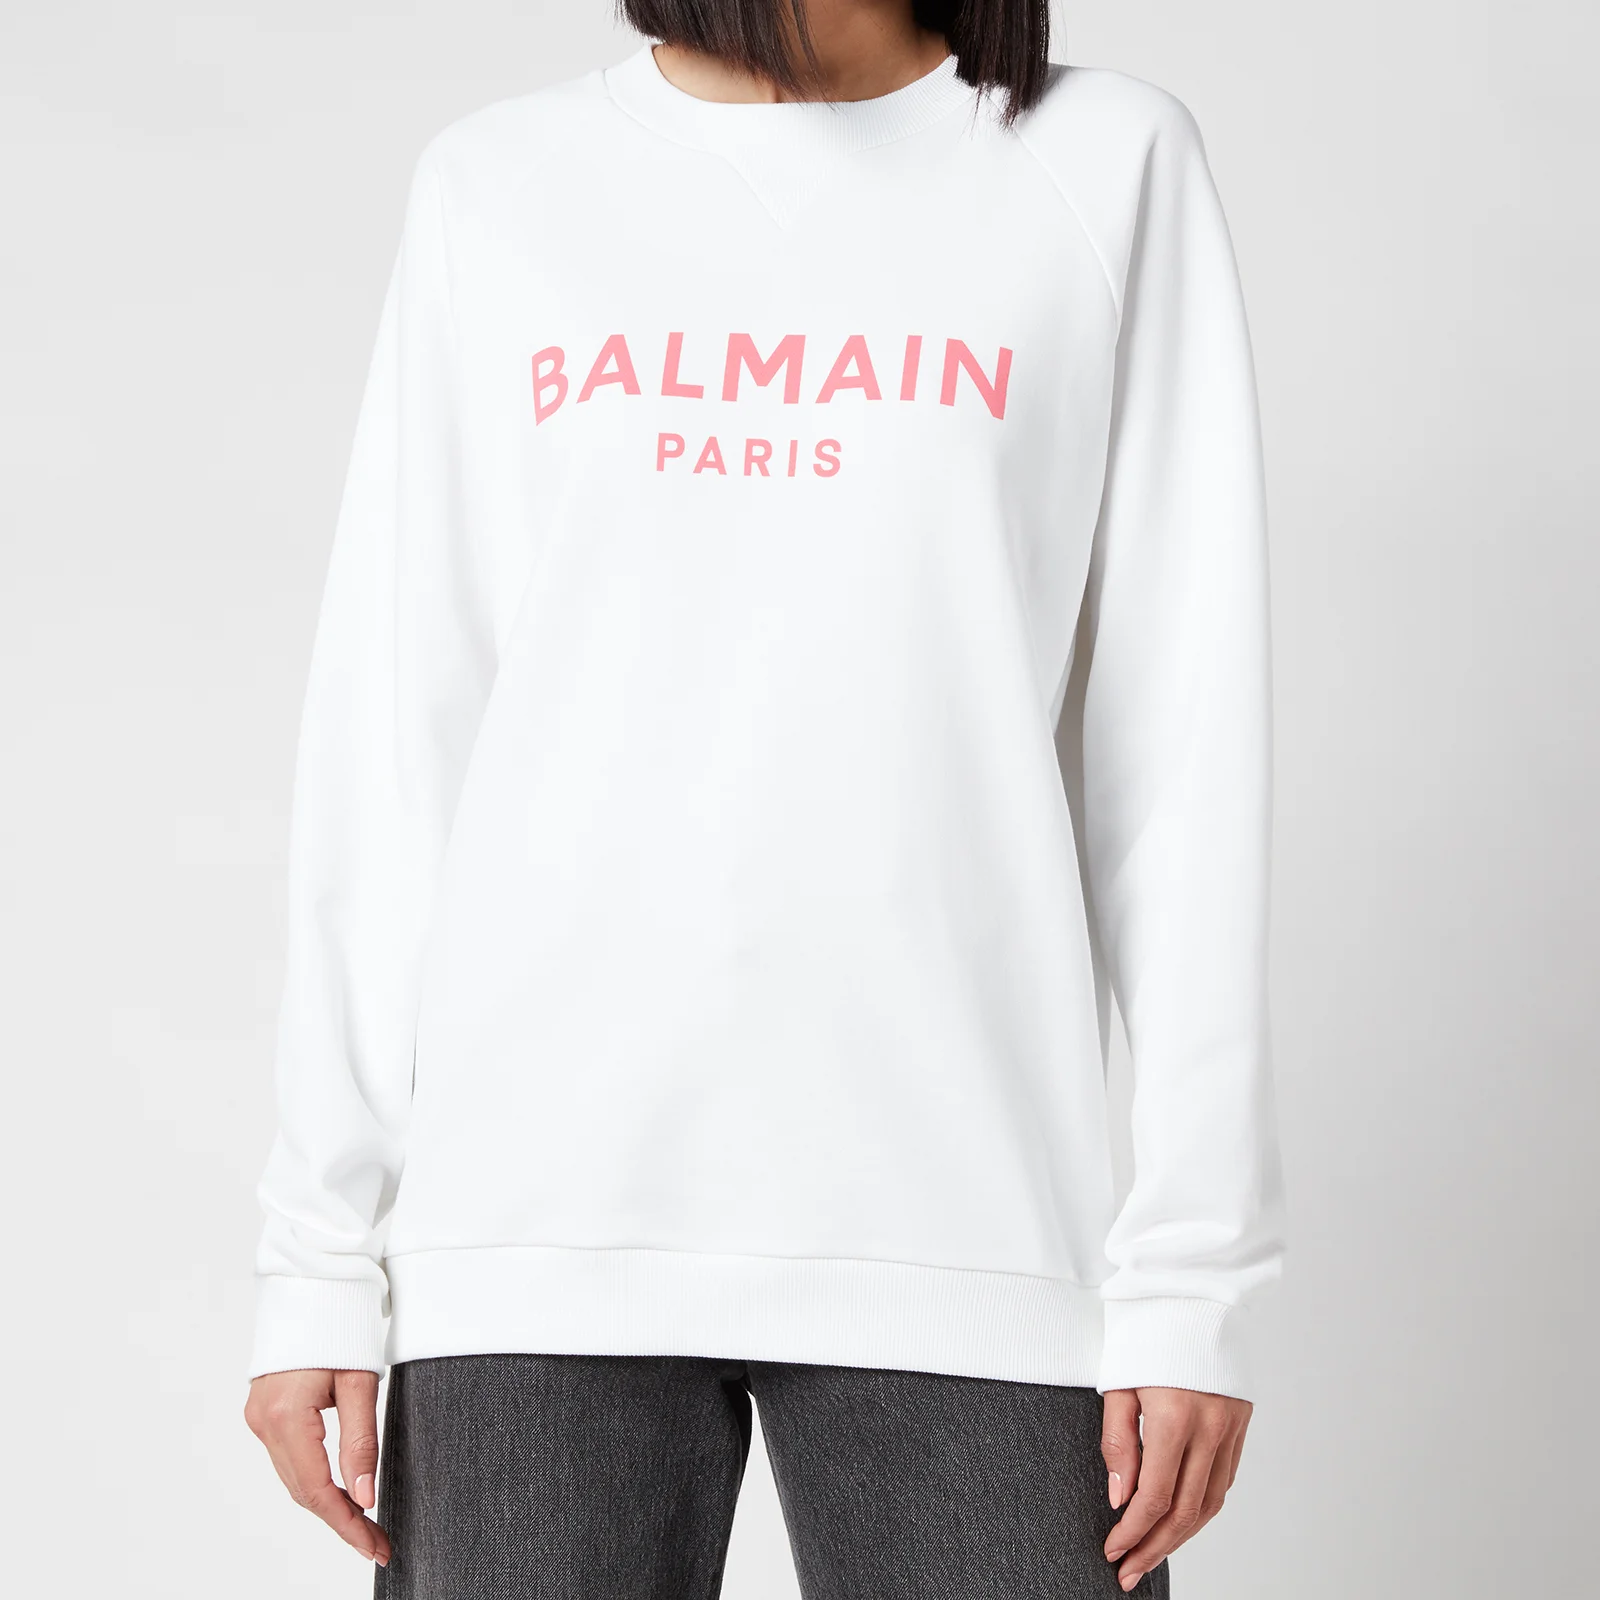 Balmain Women's Printed Logo Sweatshirt - Blanc/Rose Image 1